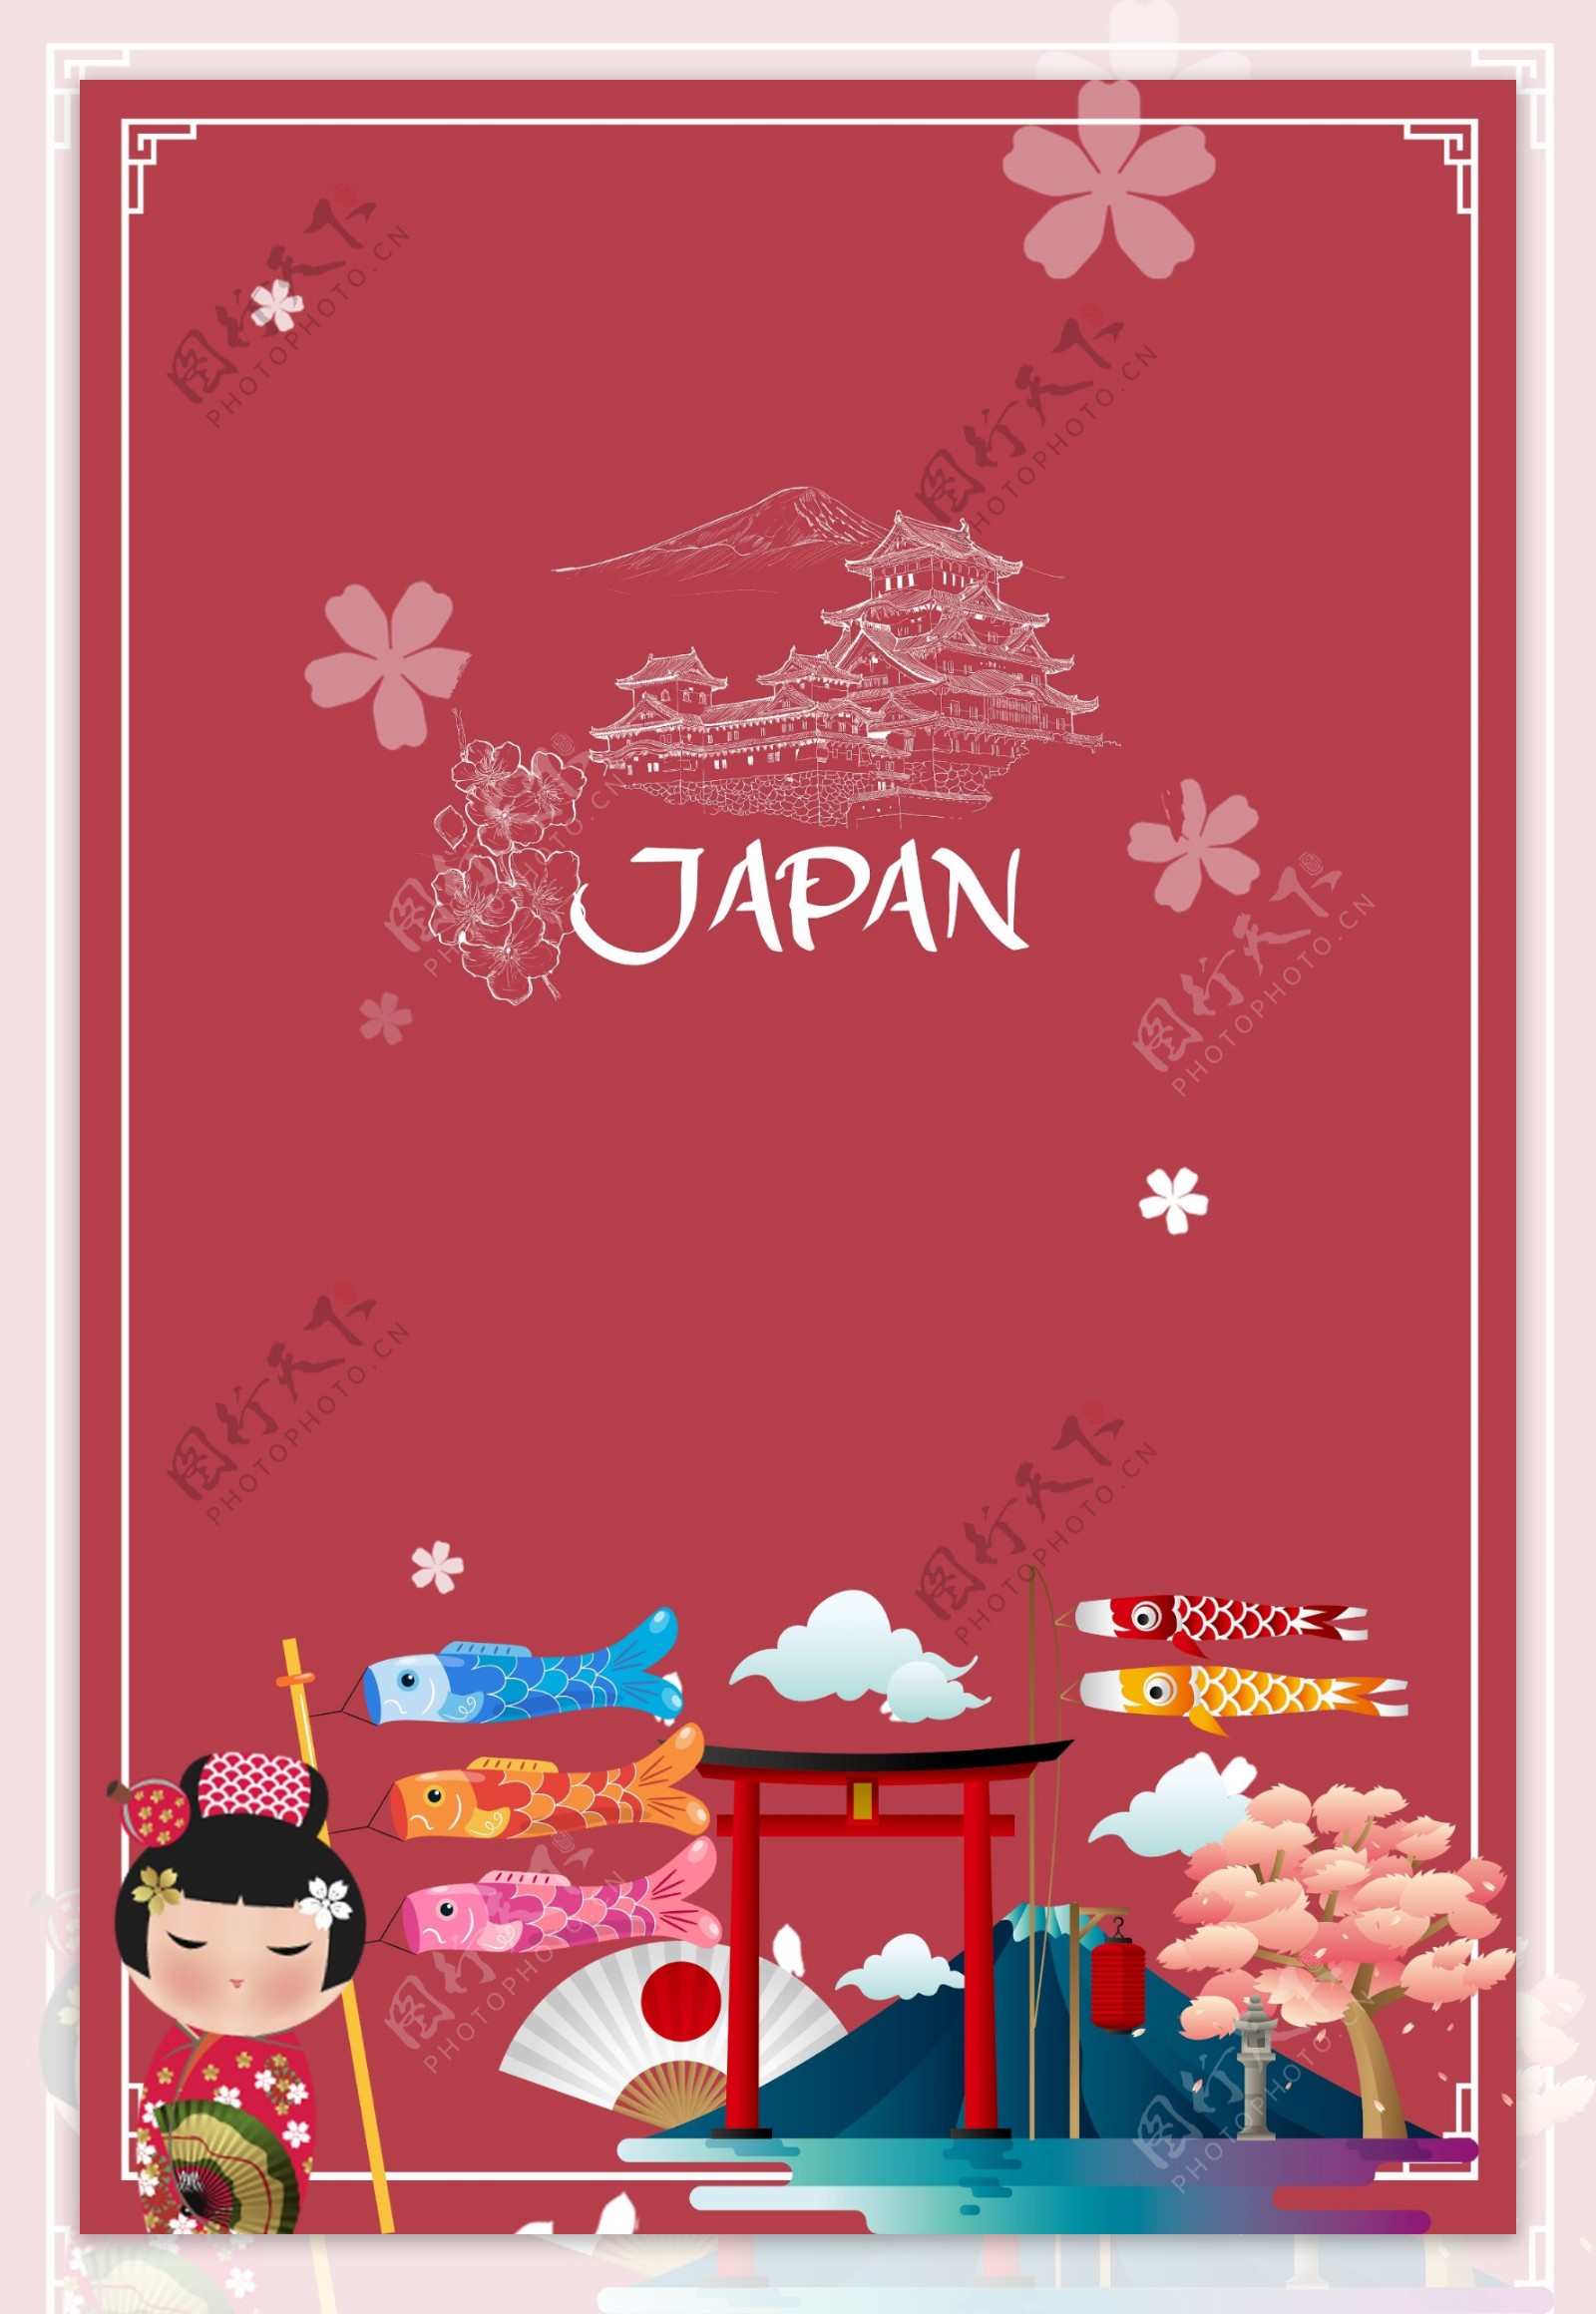 红色日本旅游海报背景设计模板